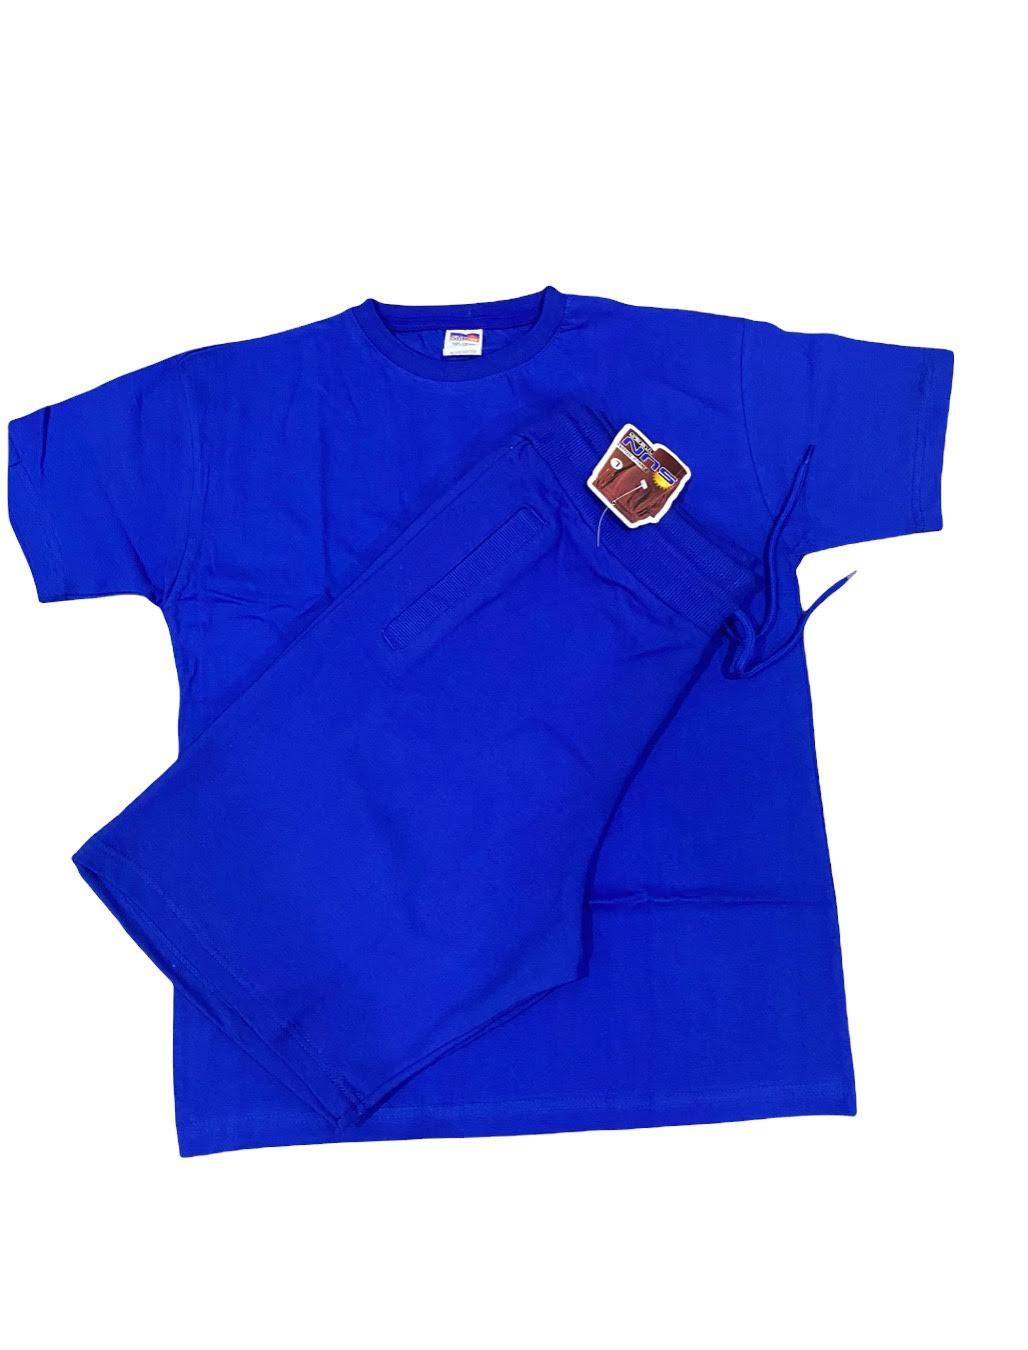 Royal blue t-shirt and short sets